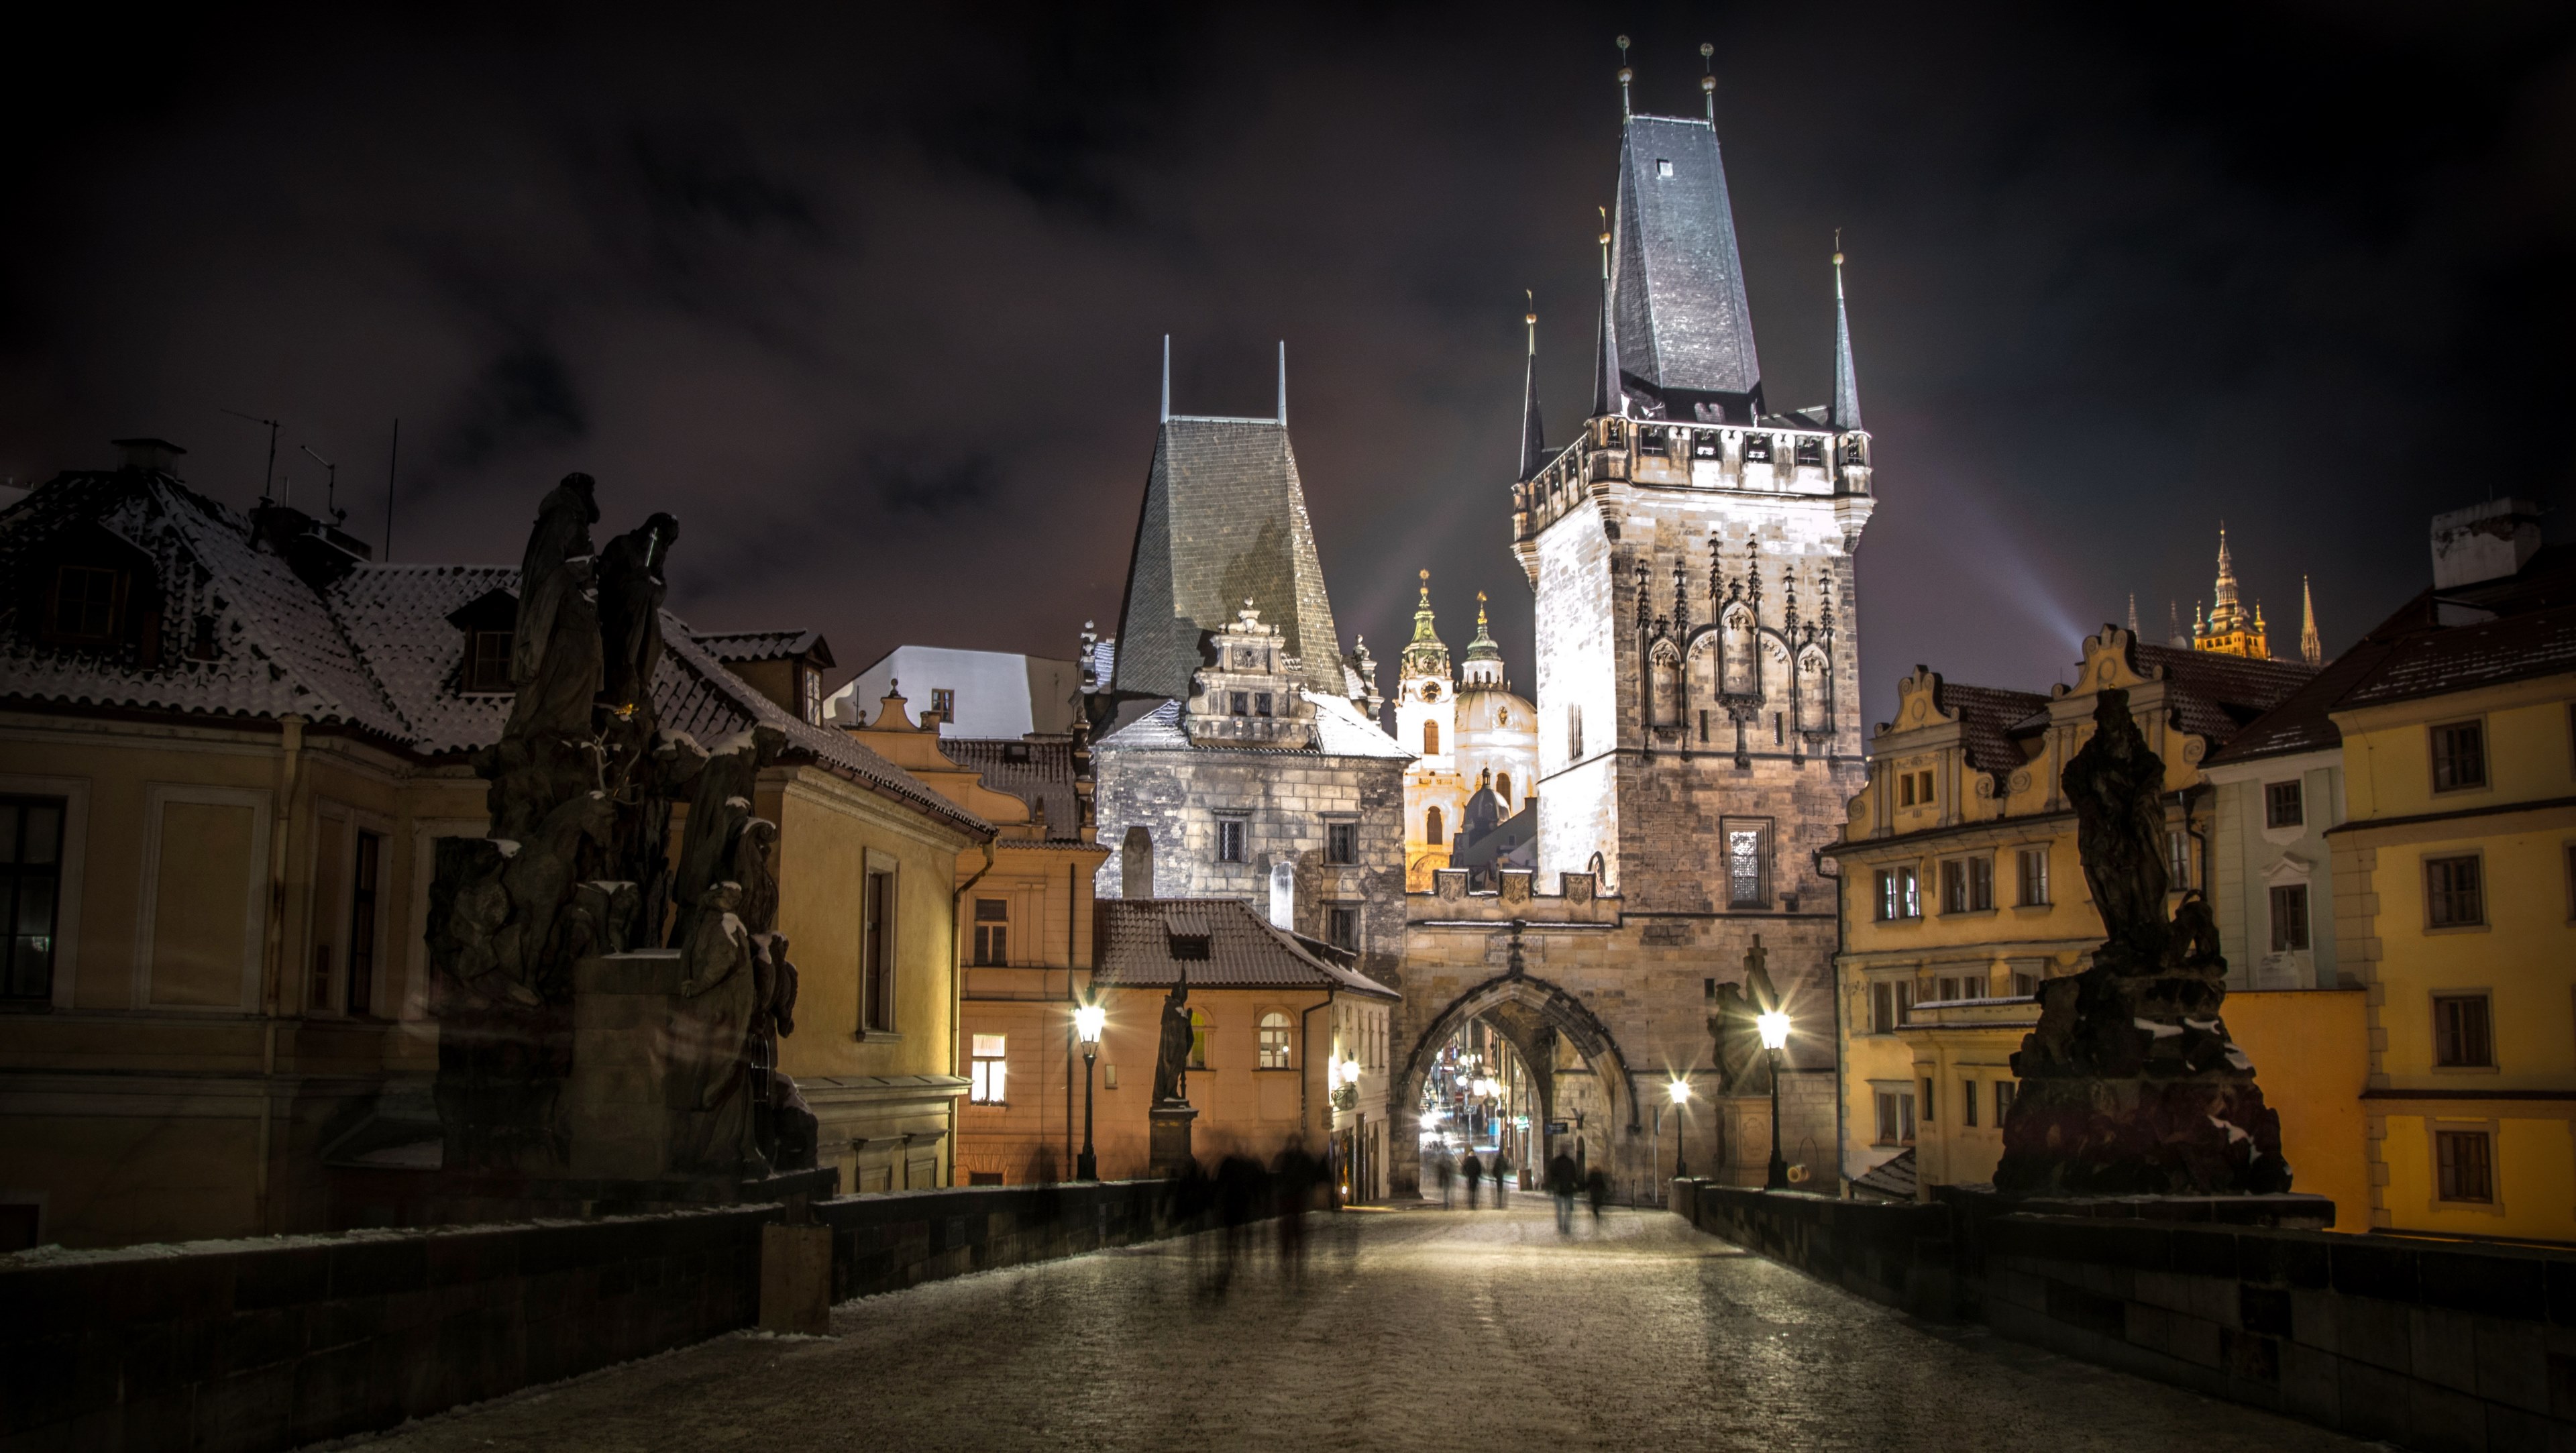 Magic Prague , HD Wallpaper & Backgrounds